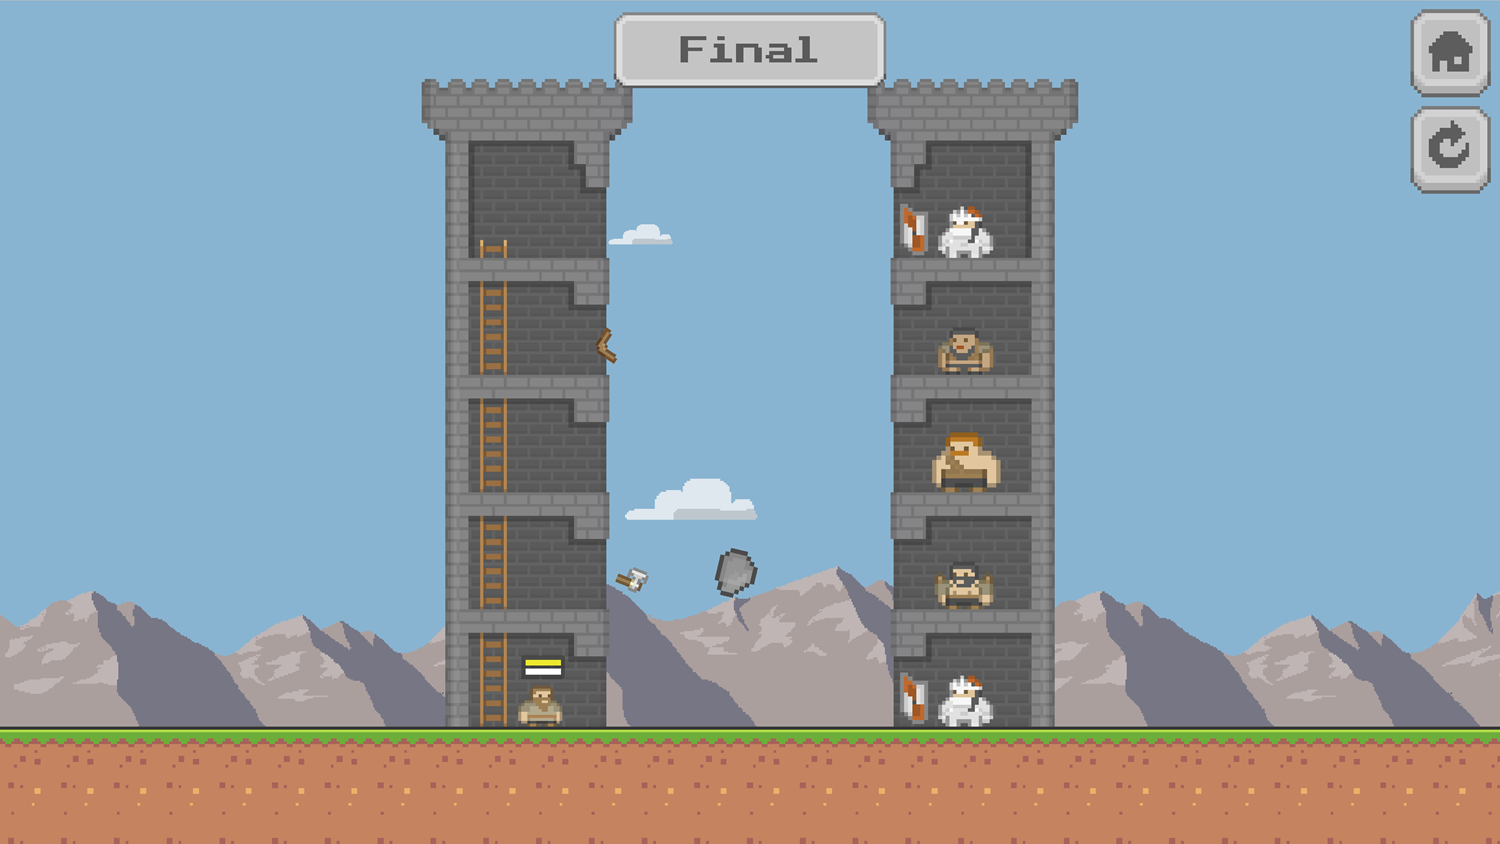 Pixel Tower Battle Game Final Level Screenshot.